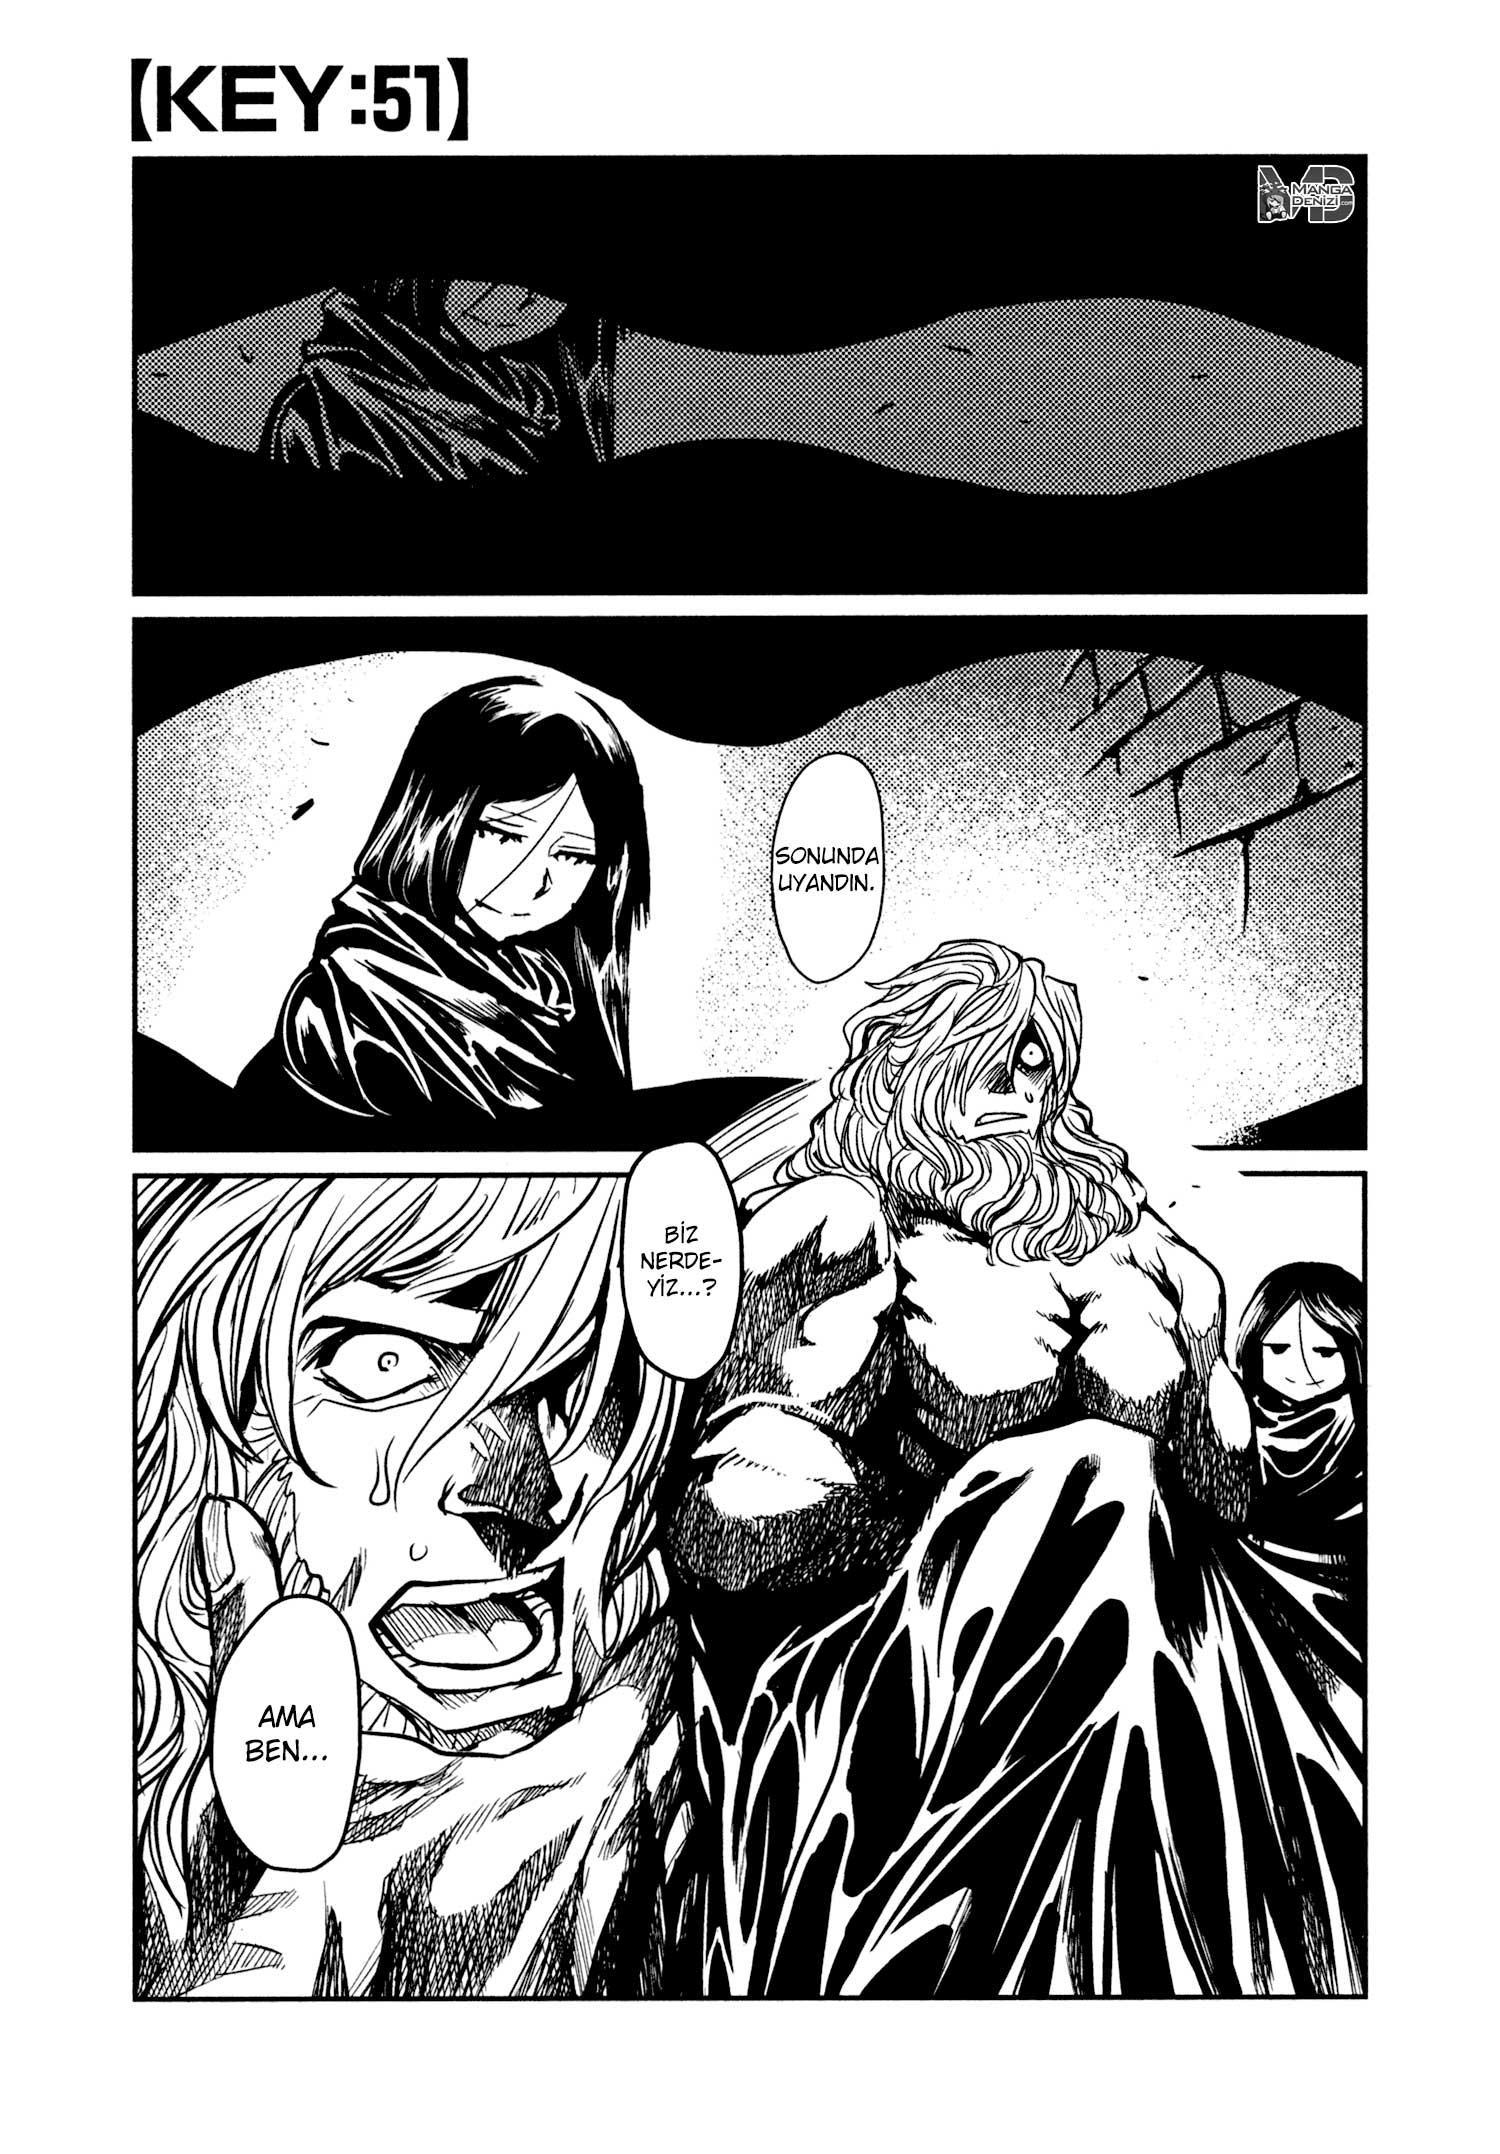 Keyman: The Hand of Judgement mangasının 51 bölümünün 2. sayfasını okuyorsunuz.